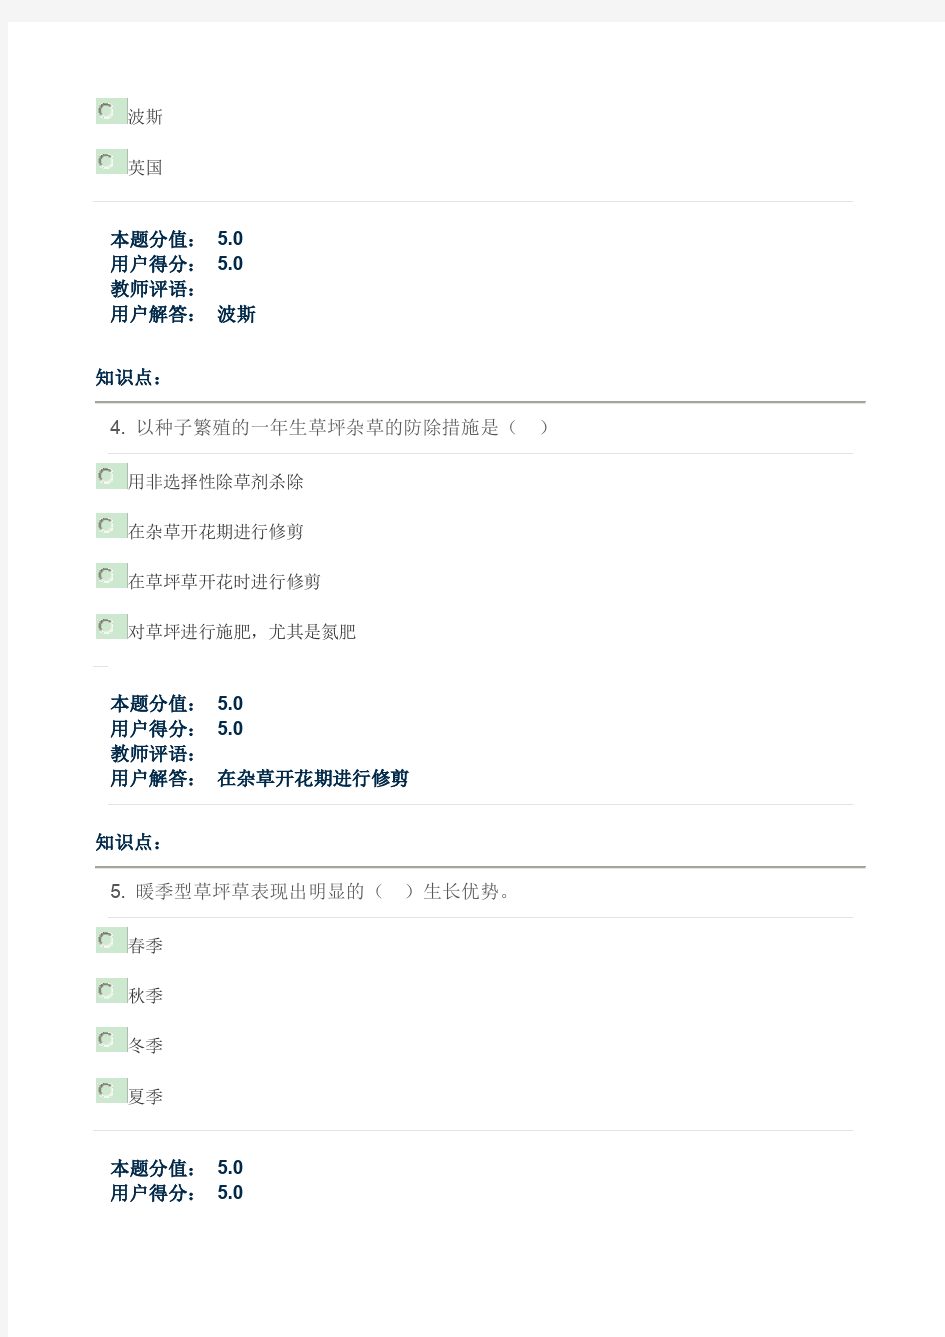 北京林业大学草坪学-在线课程作业(直接打印版)